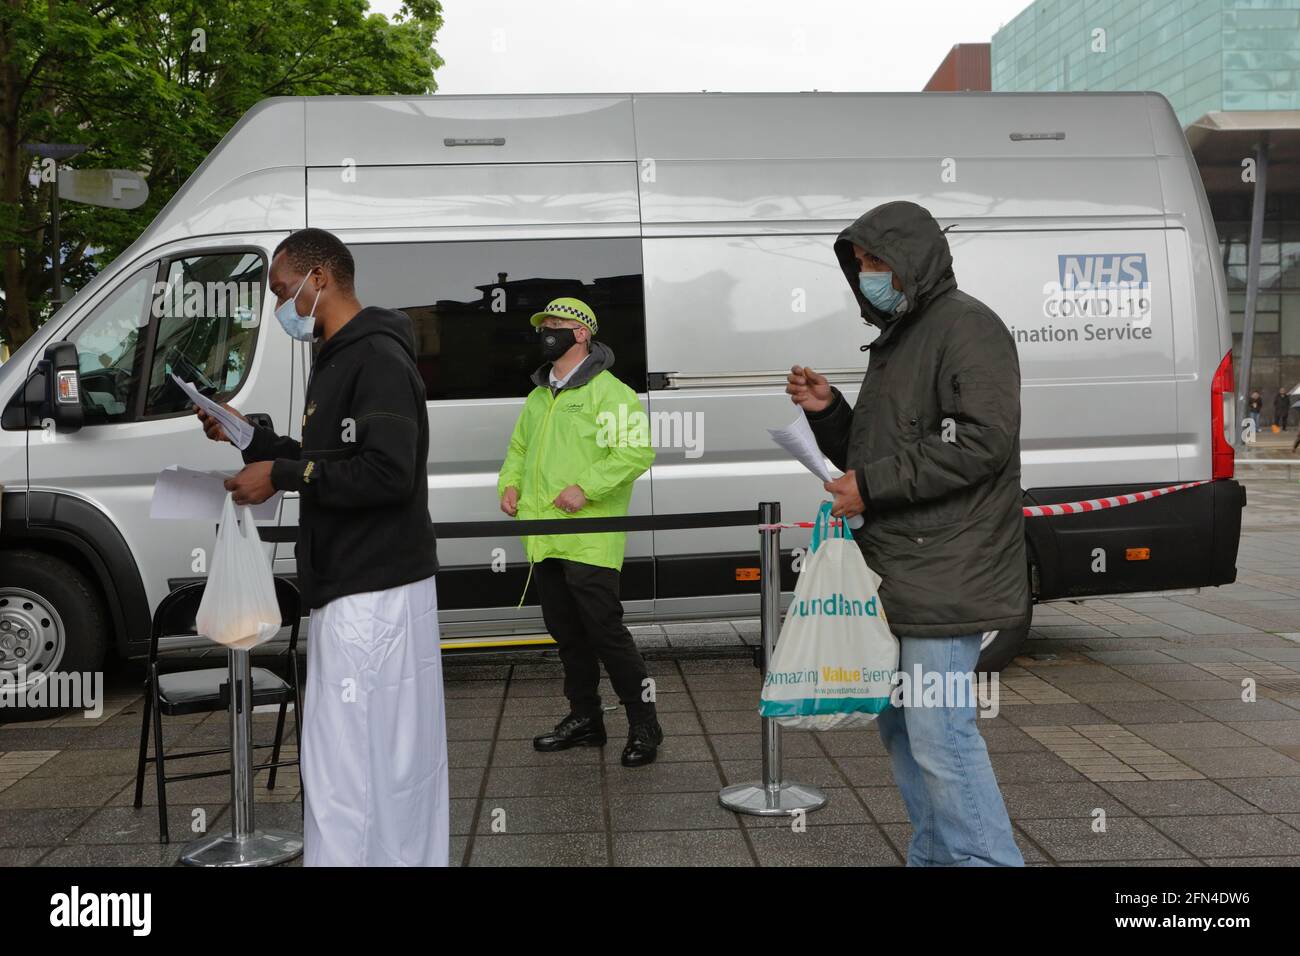 Londra (UK), 13 maggio 2021: Un servizio di vaccinazione mobile Covid-19 visita Peckham nel sud-est di Londra. Le unità si distribuiscono direttamente nei comuni difficili da raggiungere Foto Stock